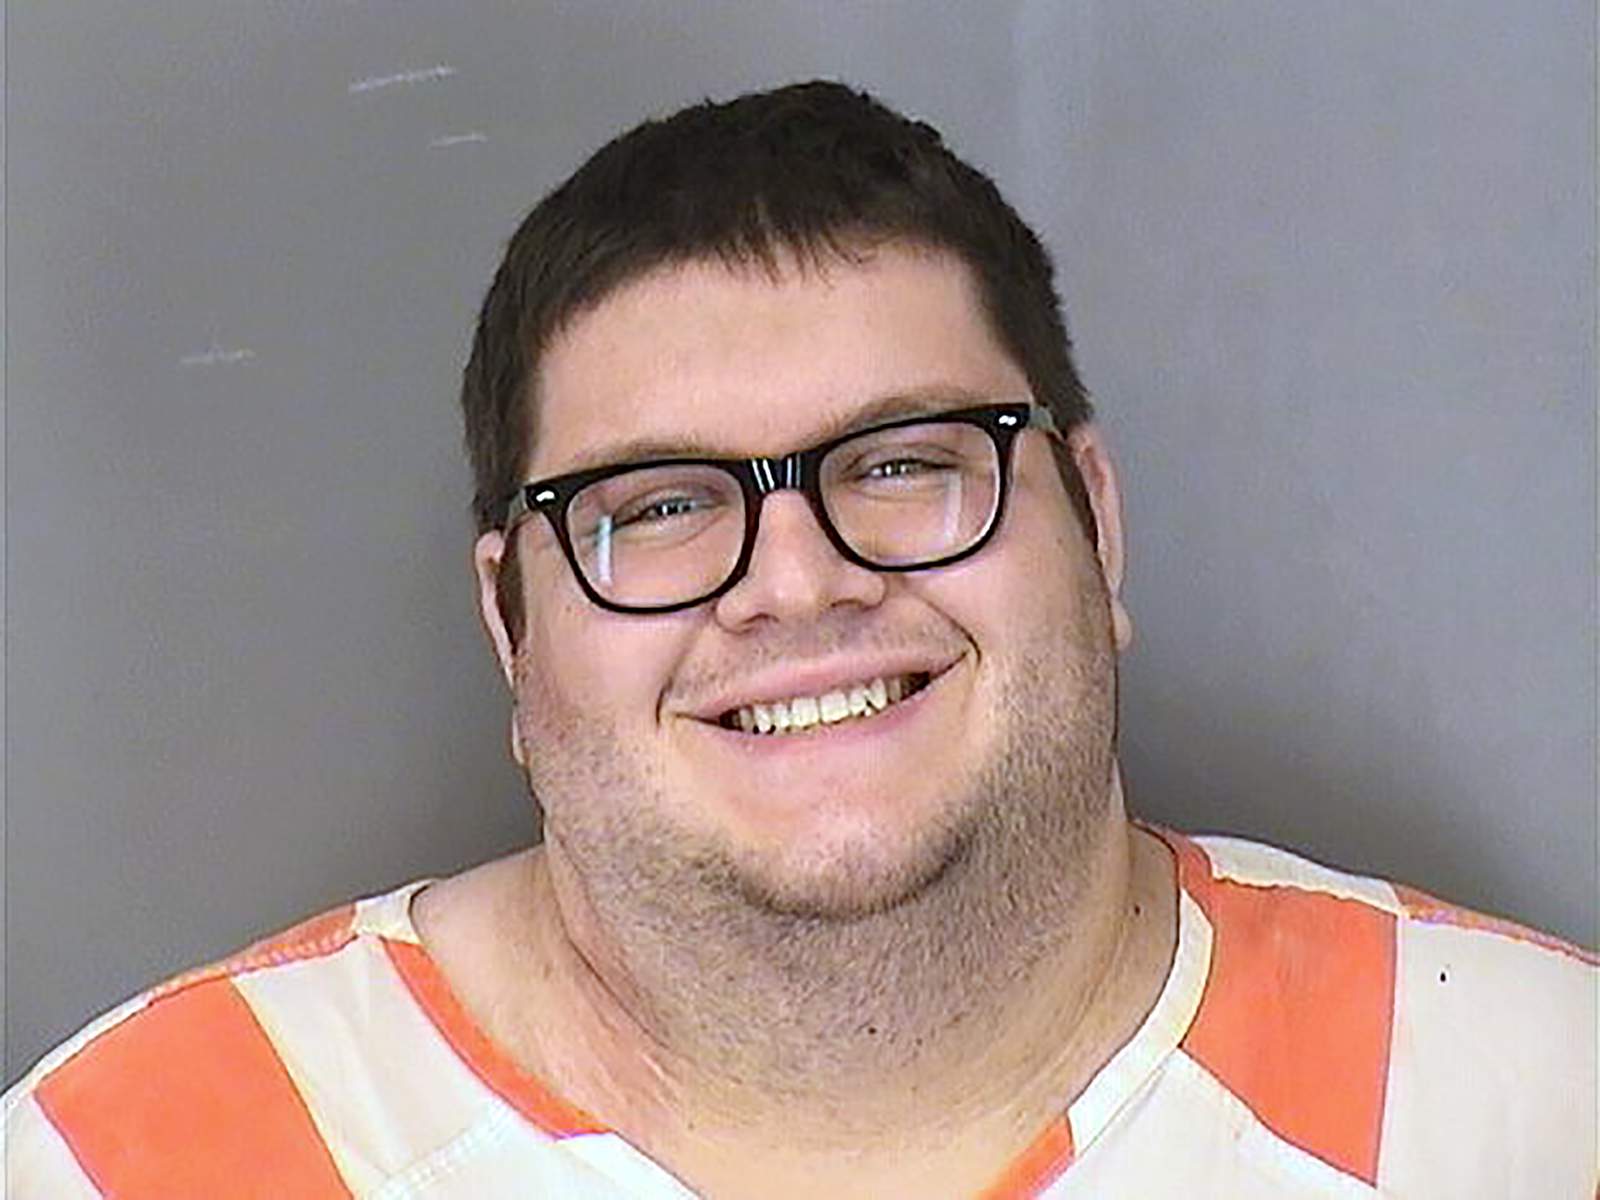 Man arrested in deadly attack at Nebraska Sonic restaurant